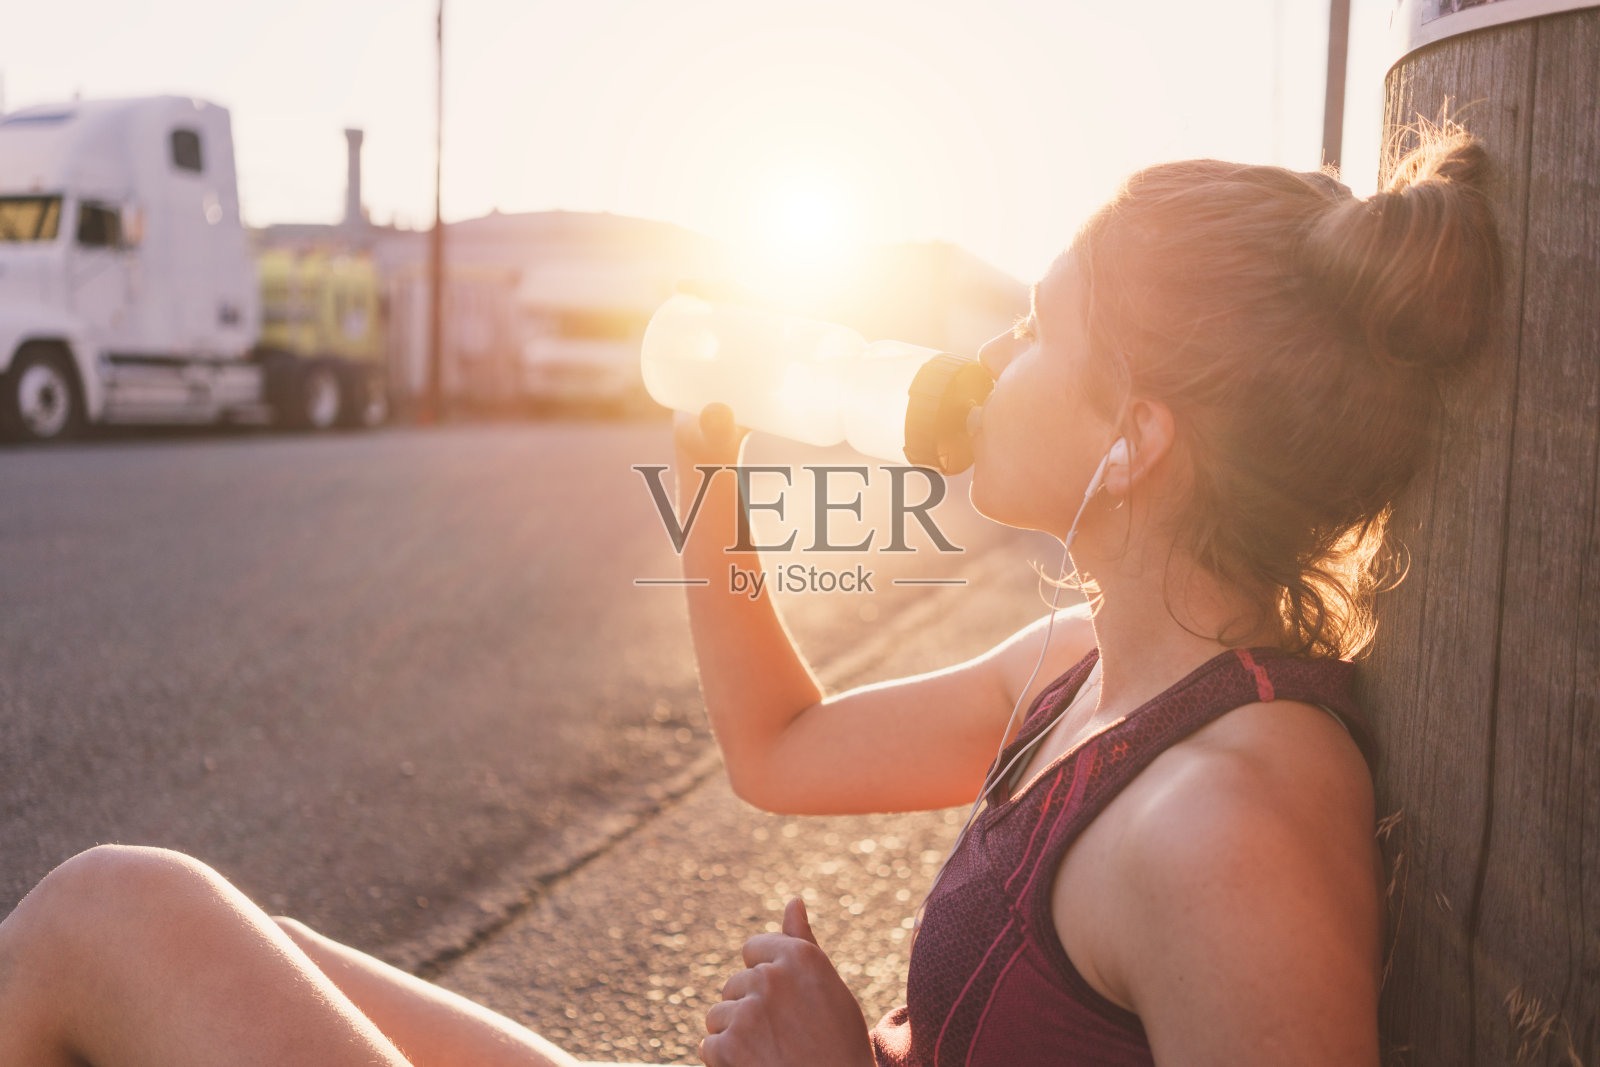 女跑步者在街上休息和喝水照片摄影图片